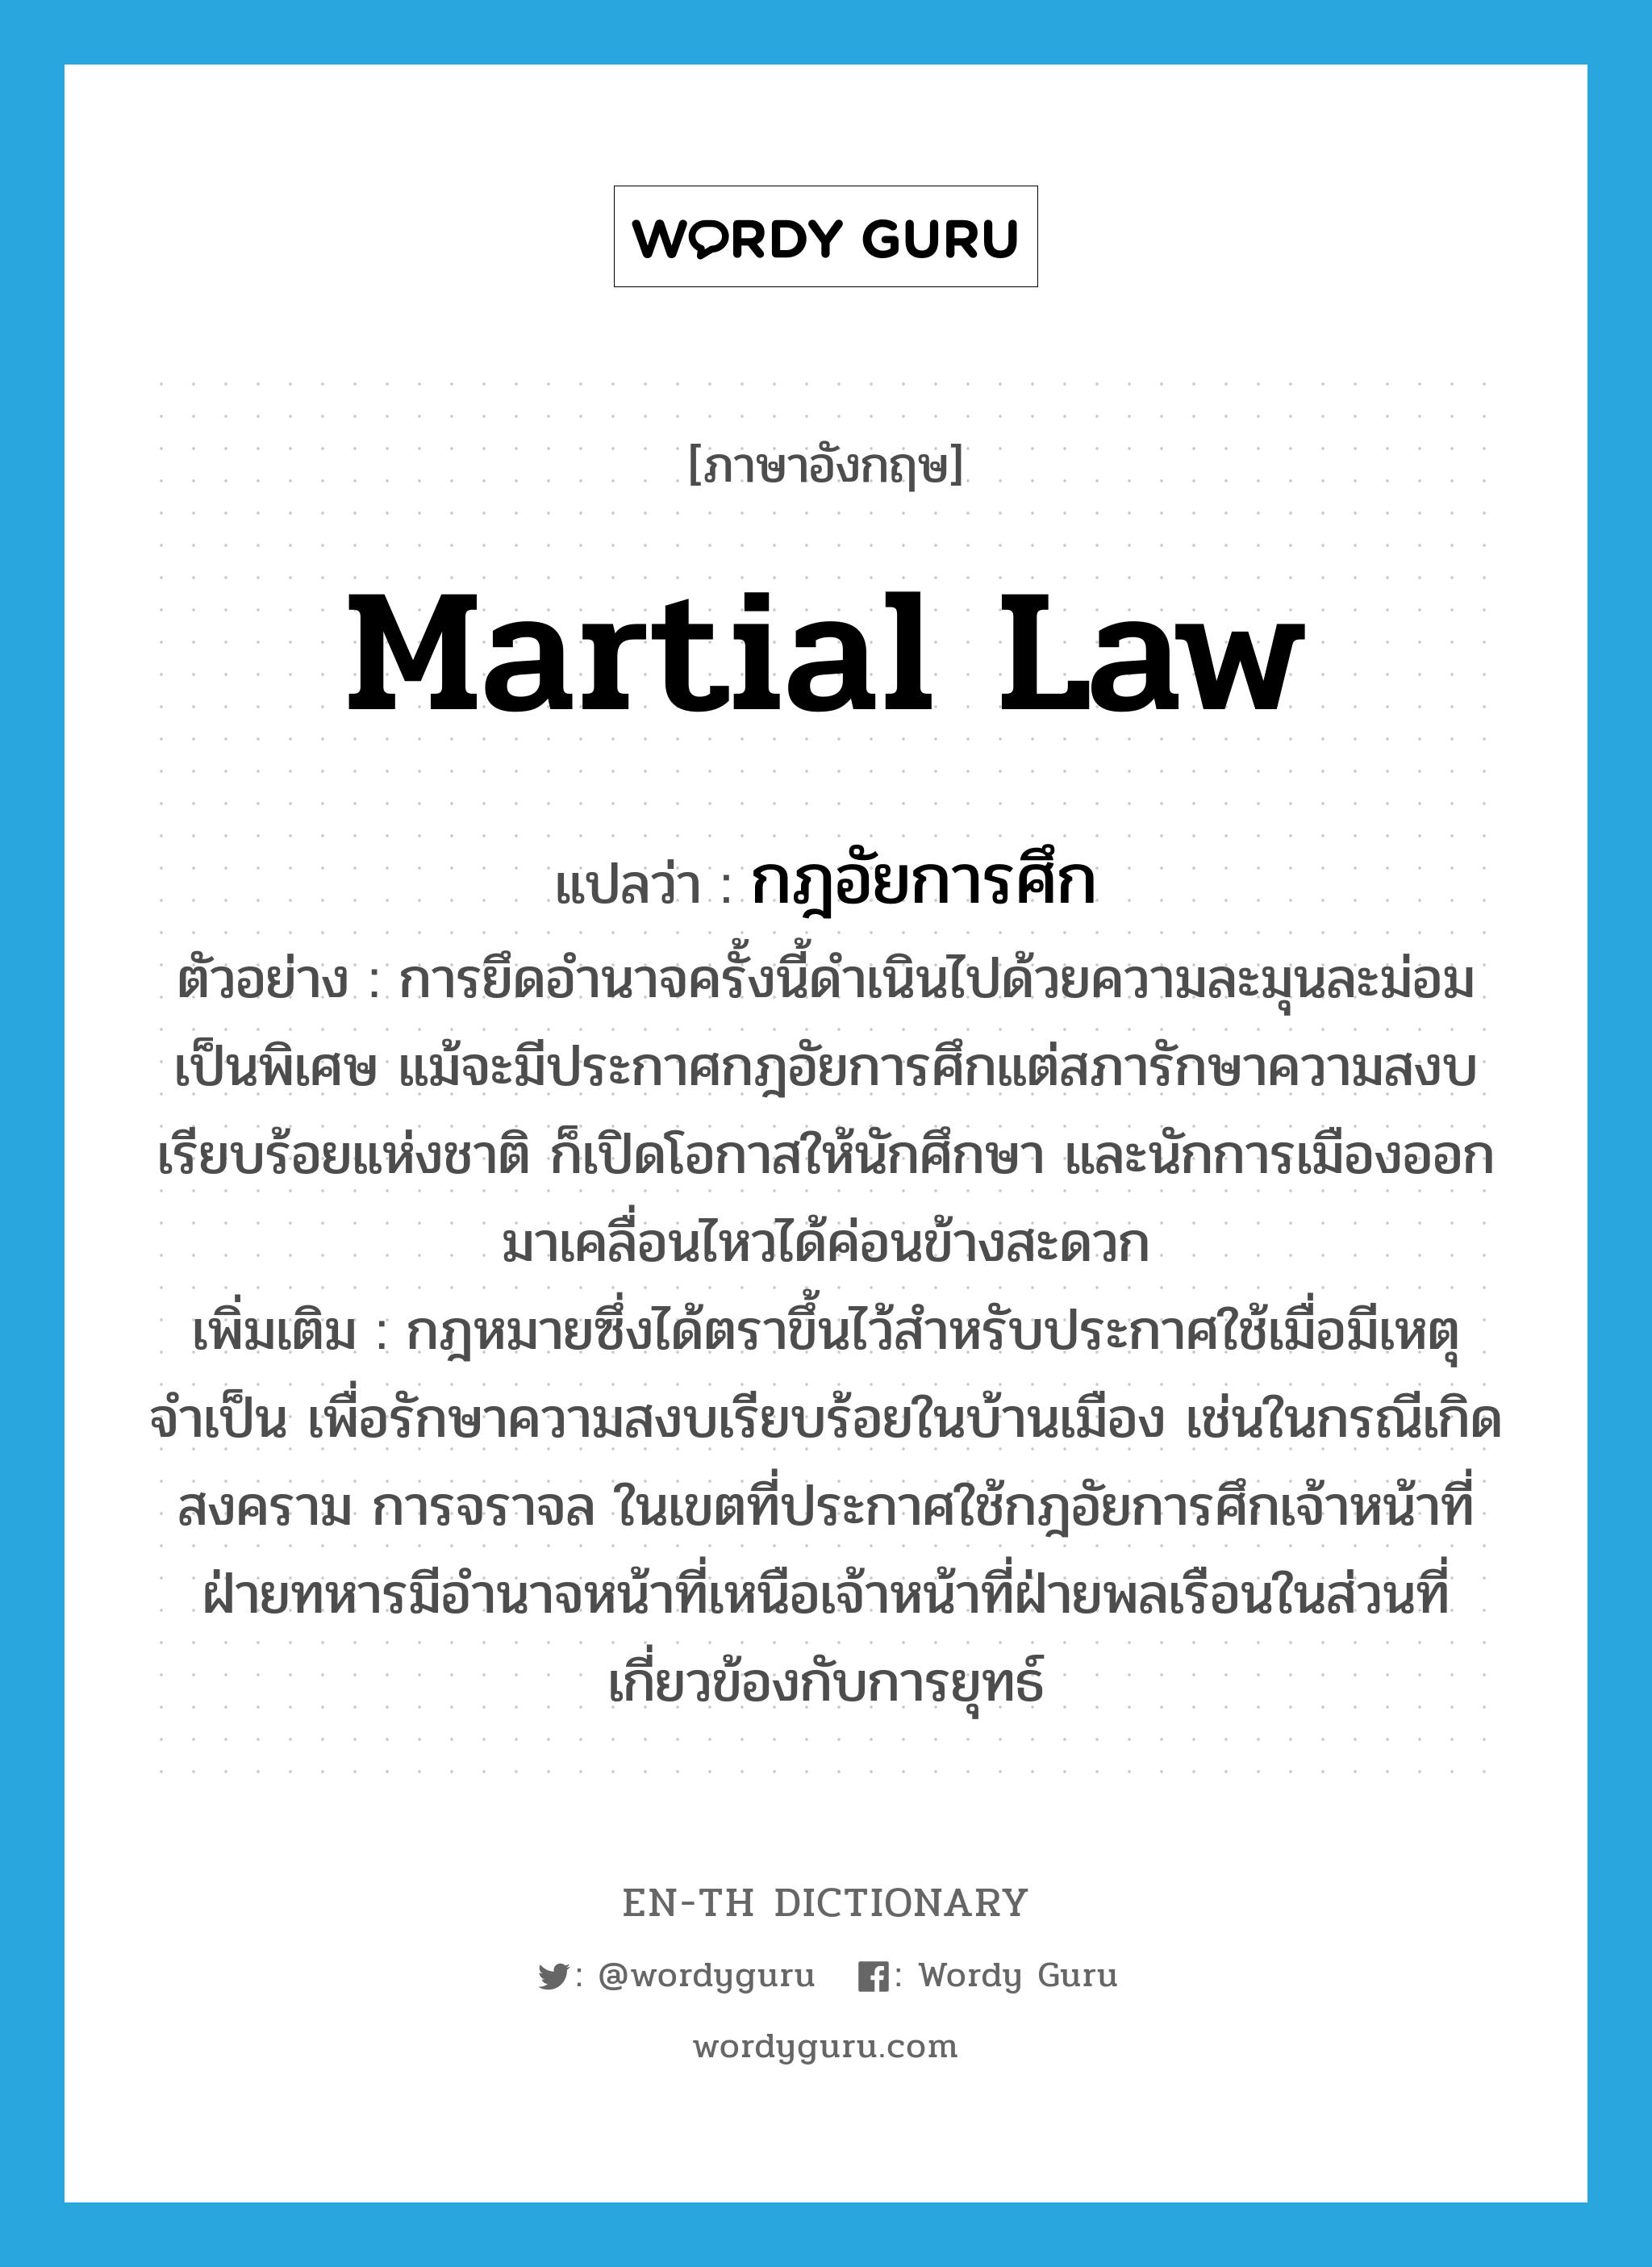 กฎอัยการศึก ภาษาอังกฤษ?, คำศัพท์ภาษาอังกฤษ กฎอัยการศึก แปลว่า martial law ประเภท N ตัวอย่าง การยึดอำนาจครั้งนี้ดำเนินไปด้วยความละมุนละม่อมเป็นพิเศษ แม้จะมีประกาศกฎอัยการศึกแต่สภารักษาความสงบเรียบร้อยแห่งชาติ ก็เปิดโอกาสให้นักศึกษา และนักการเมืองออกมาเคลื่อนไหวได้ค่อนข้างสะดวก เพิ่มเติม กฎหมายซึ่งได้ตราขึ้นไว้สำหรับประกาศใช้เมื่อมีเหตุจำเป็น เพื่อรักษาความสงบเรียบร้อยในบ้านเมือง เช่นในกรณีเกิดสงคราม การจราจล ในเขตที่ประกาศใช้กฎอัยการศึกเจ้าหน้าที่ฝ่ายทหารมีอำนาจหน้าที่เหนือเจ้าหน้าที่ฝ่ายพลเรือนในส่วนที่เกี่ยวข้องกับการยุทธ์ หมวด N